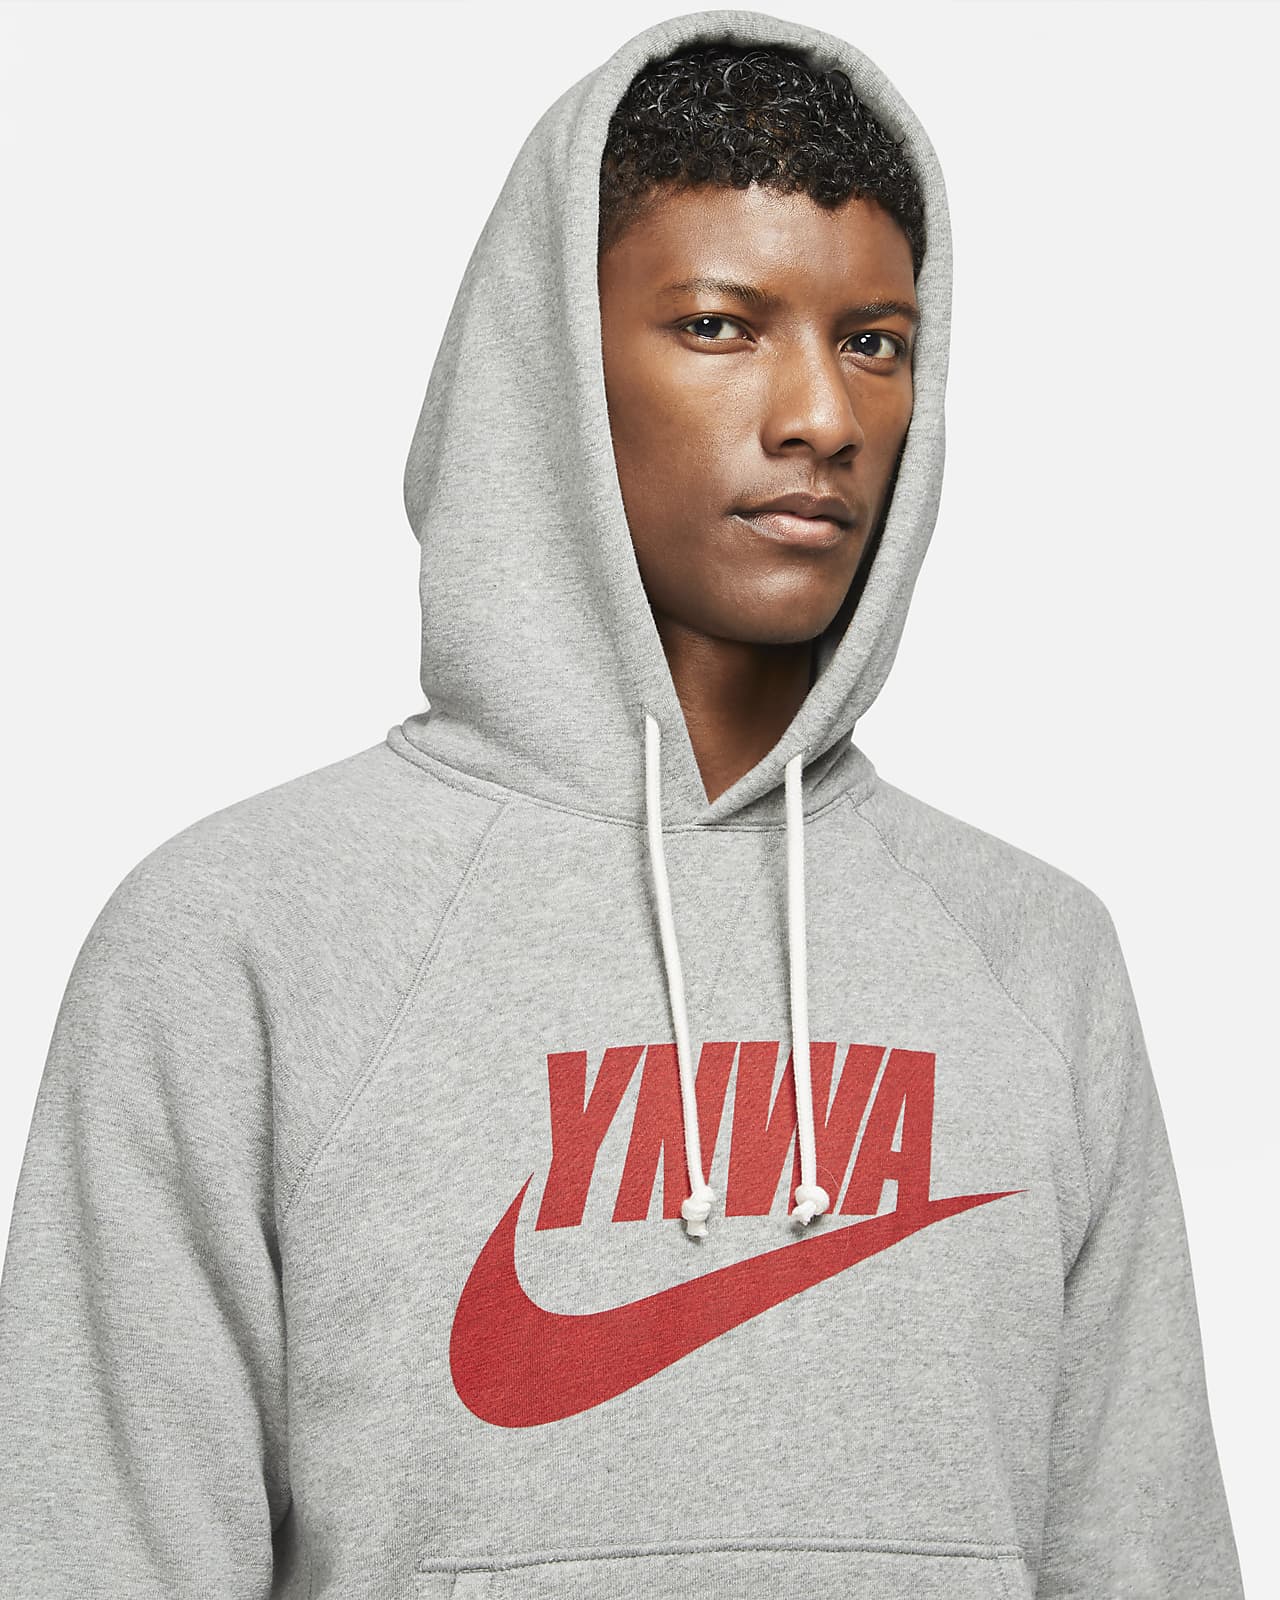 YNWA Liverpool Football Hoodie Sweatshirt Mens Boys Girls Printed Hooded Top 